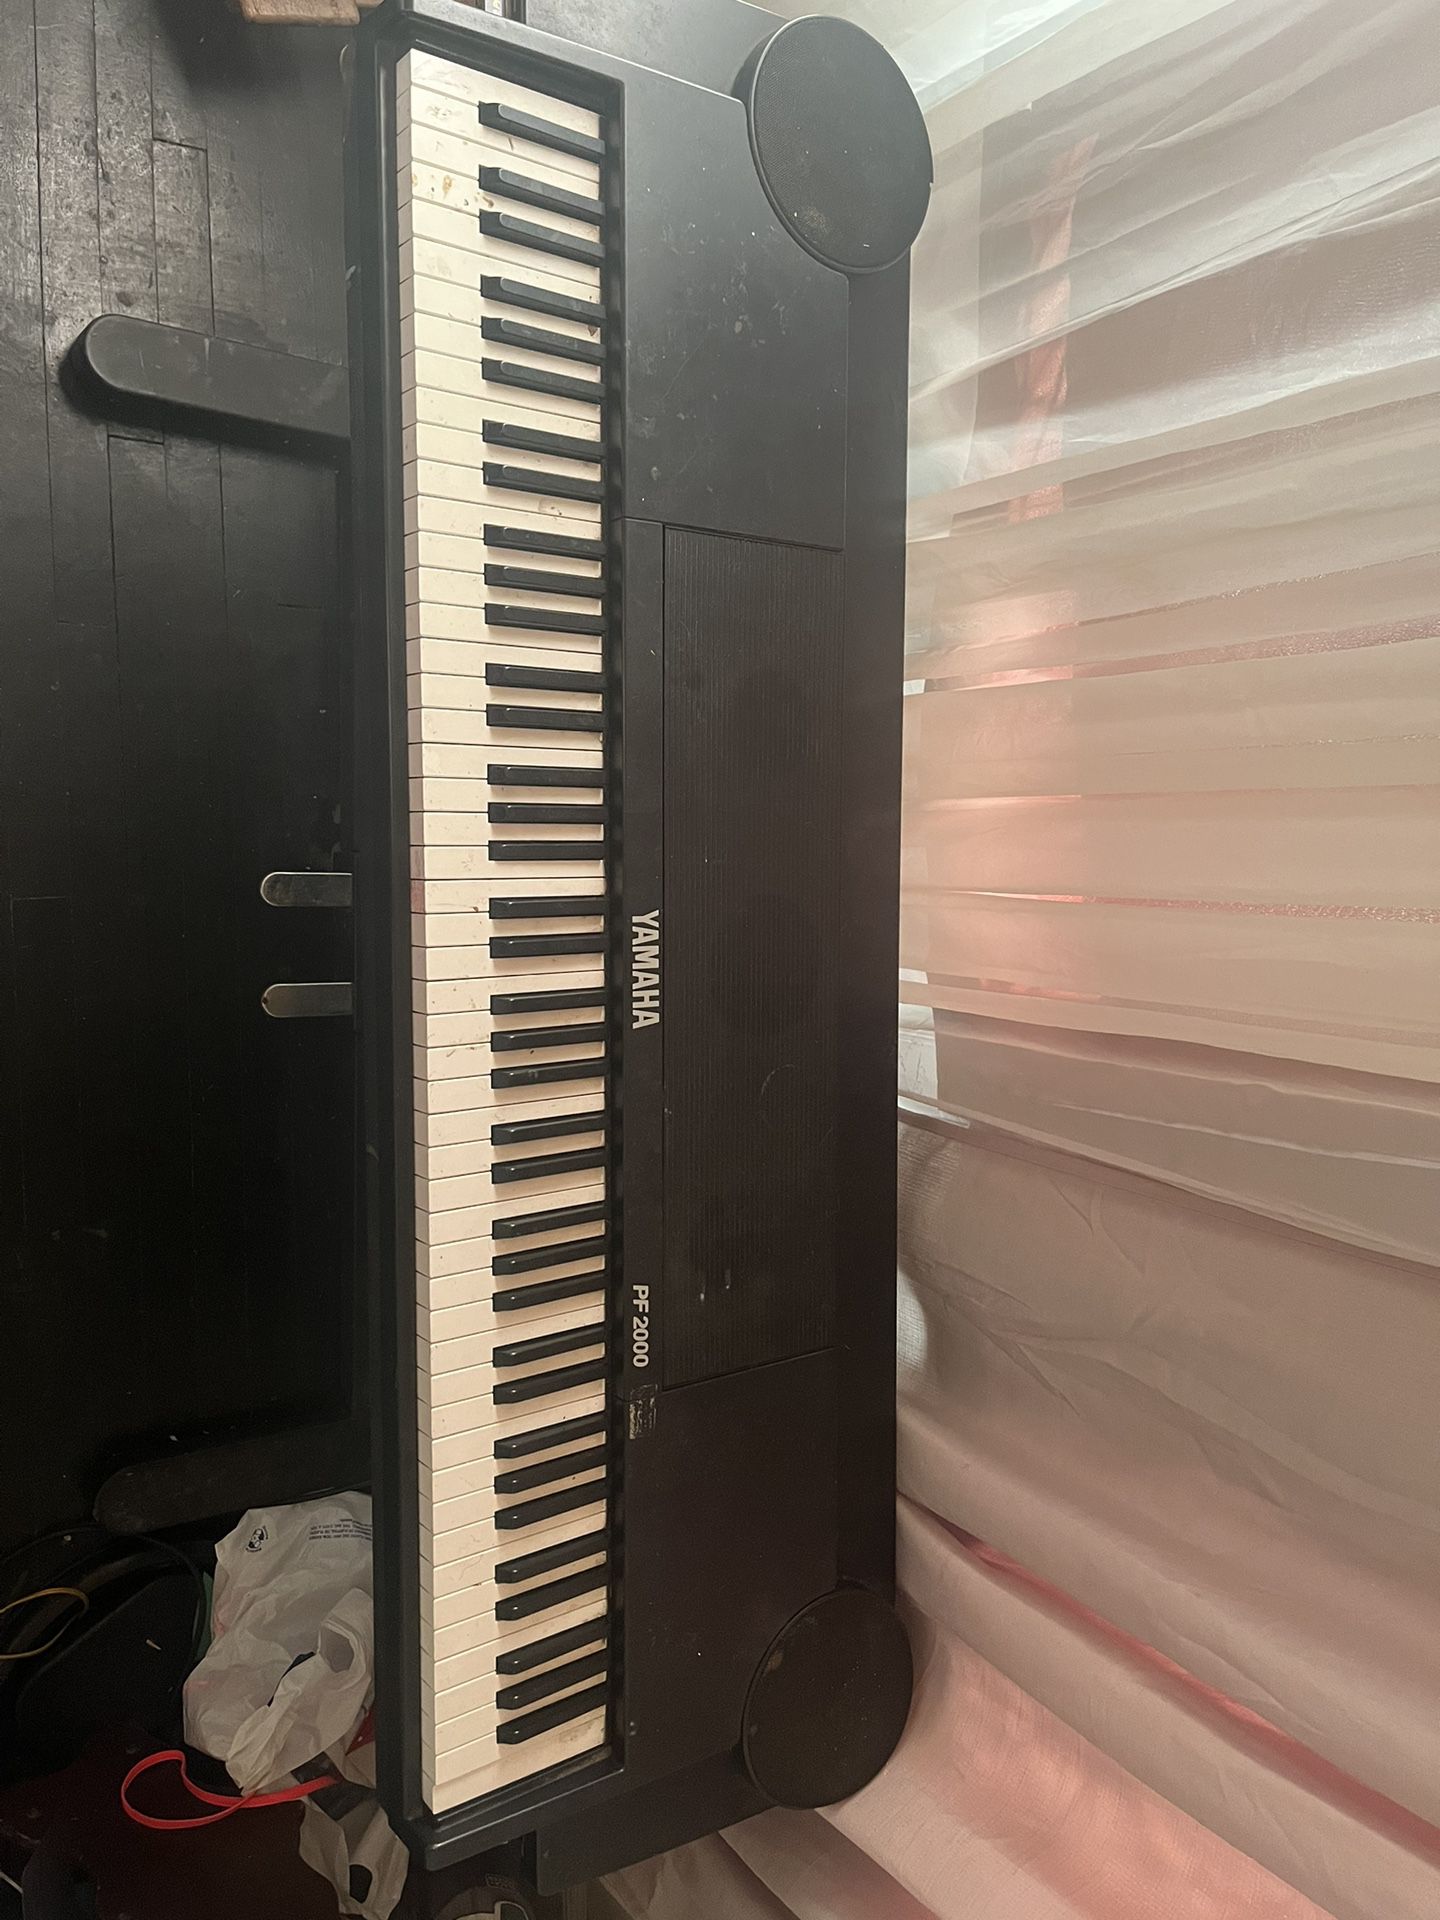 Yamaha Piano 